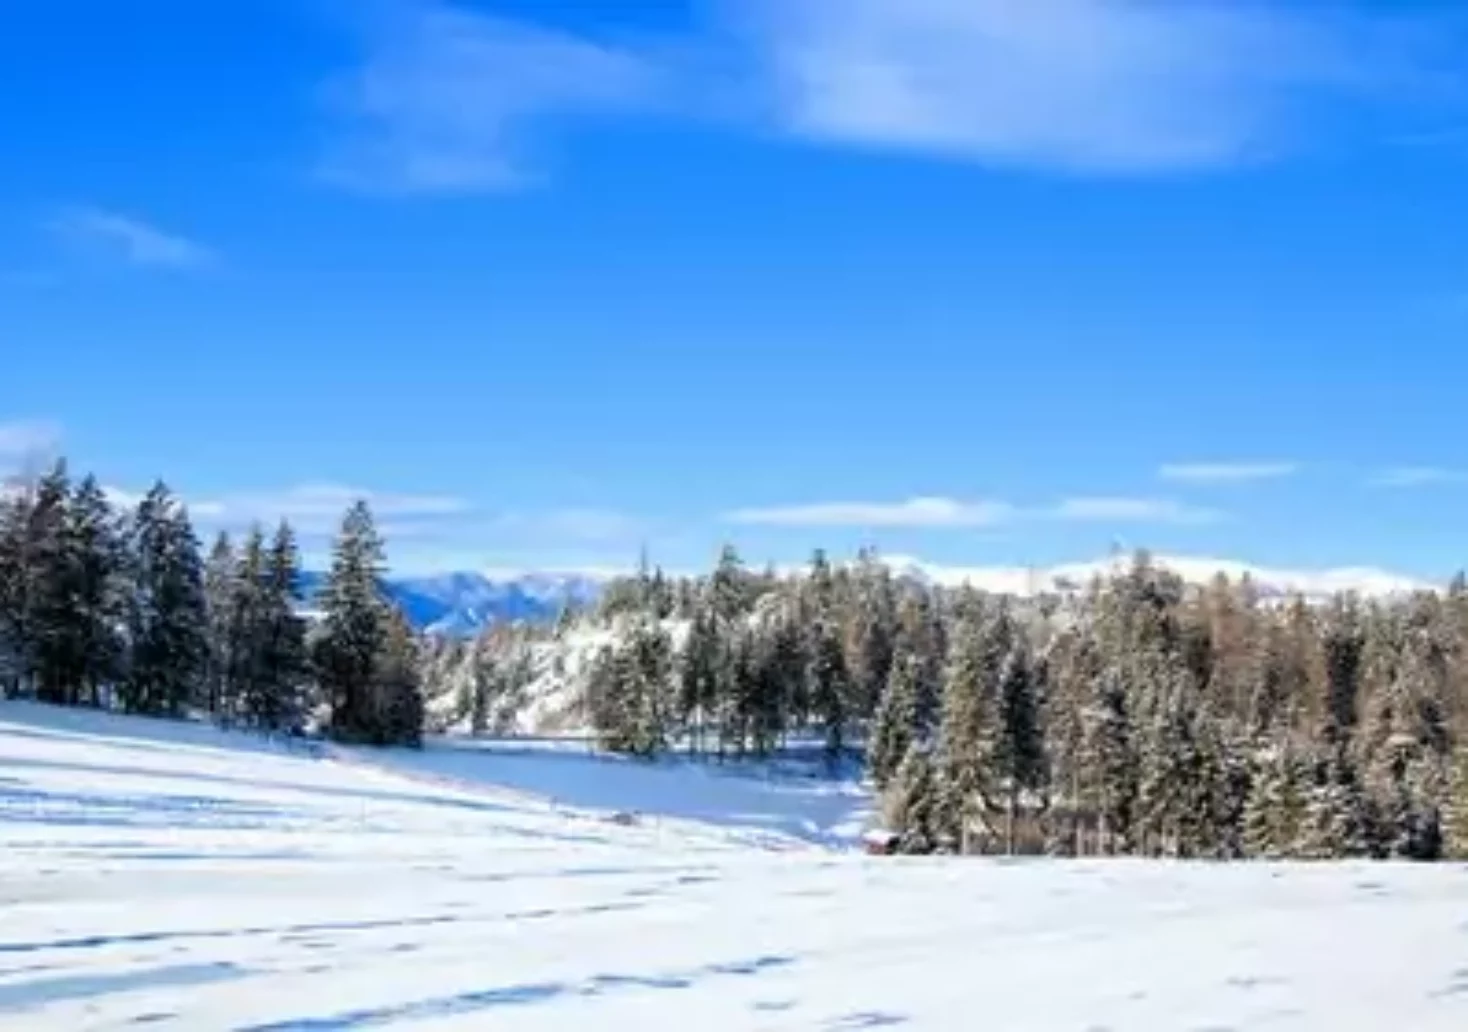 Foto in Beitrag von 5min.at: Zu sehen ist eine steirische Schneelandschaft im Winter.